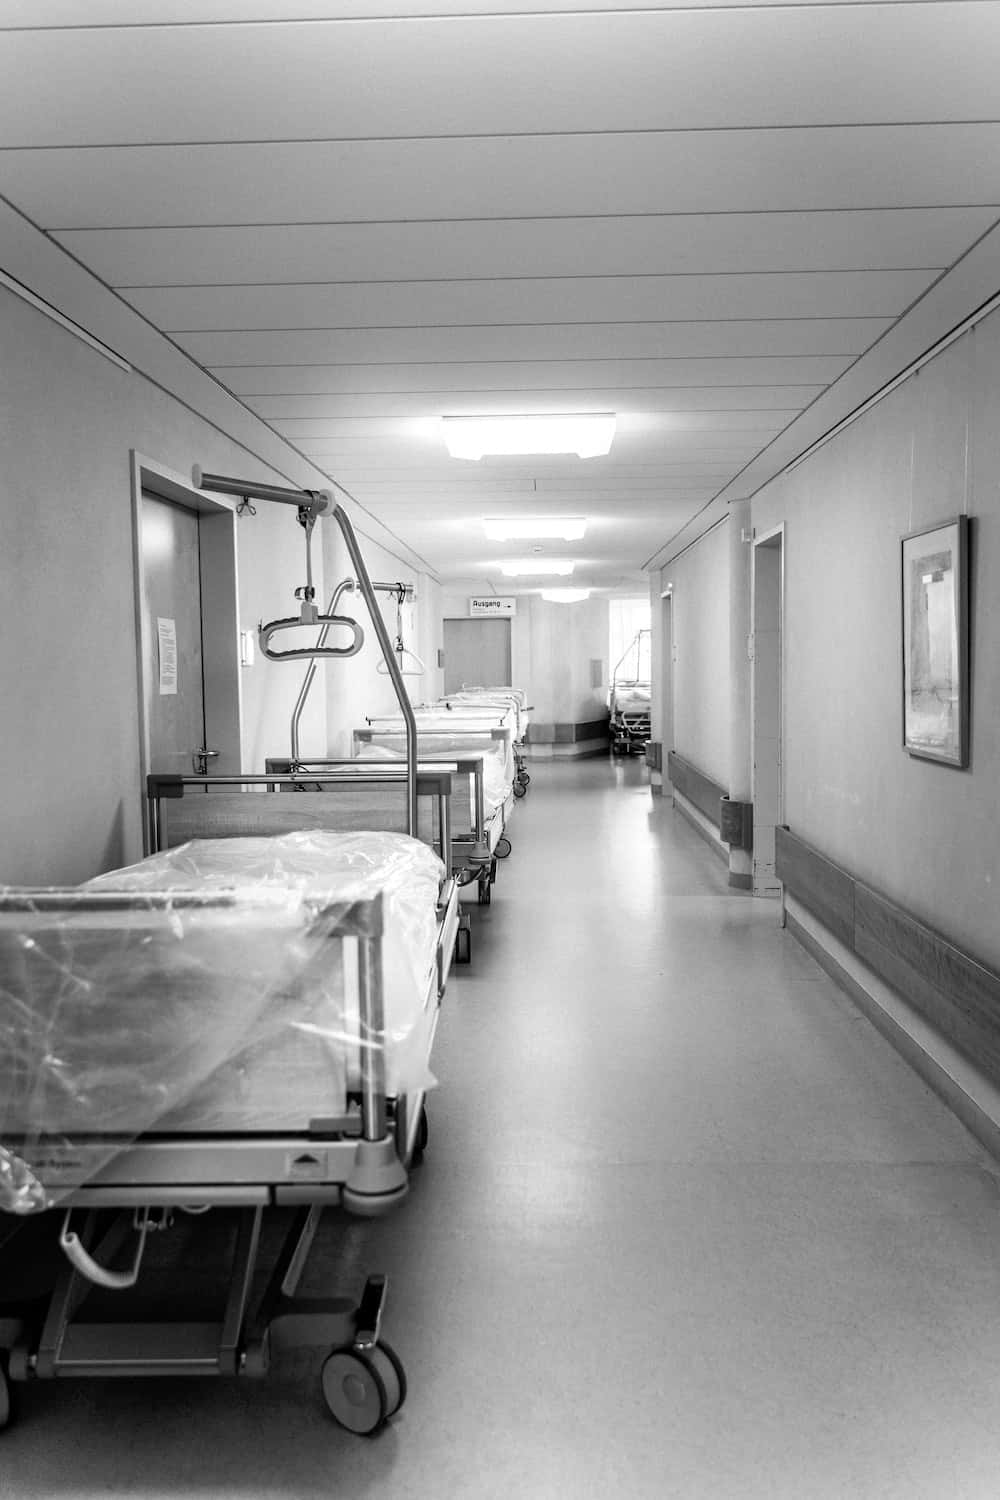 A glimpse inside a modern hospital room.